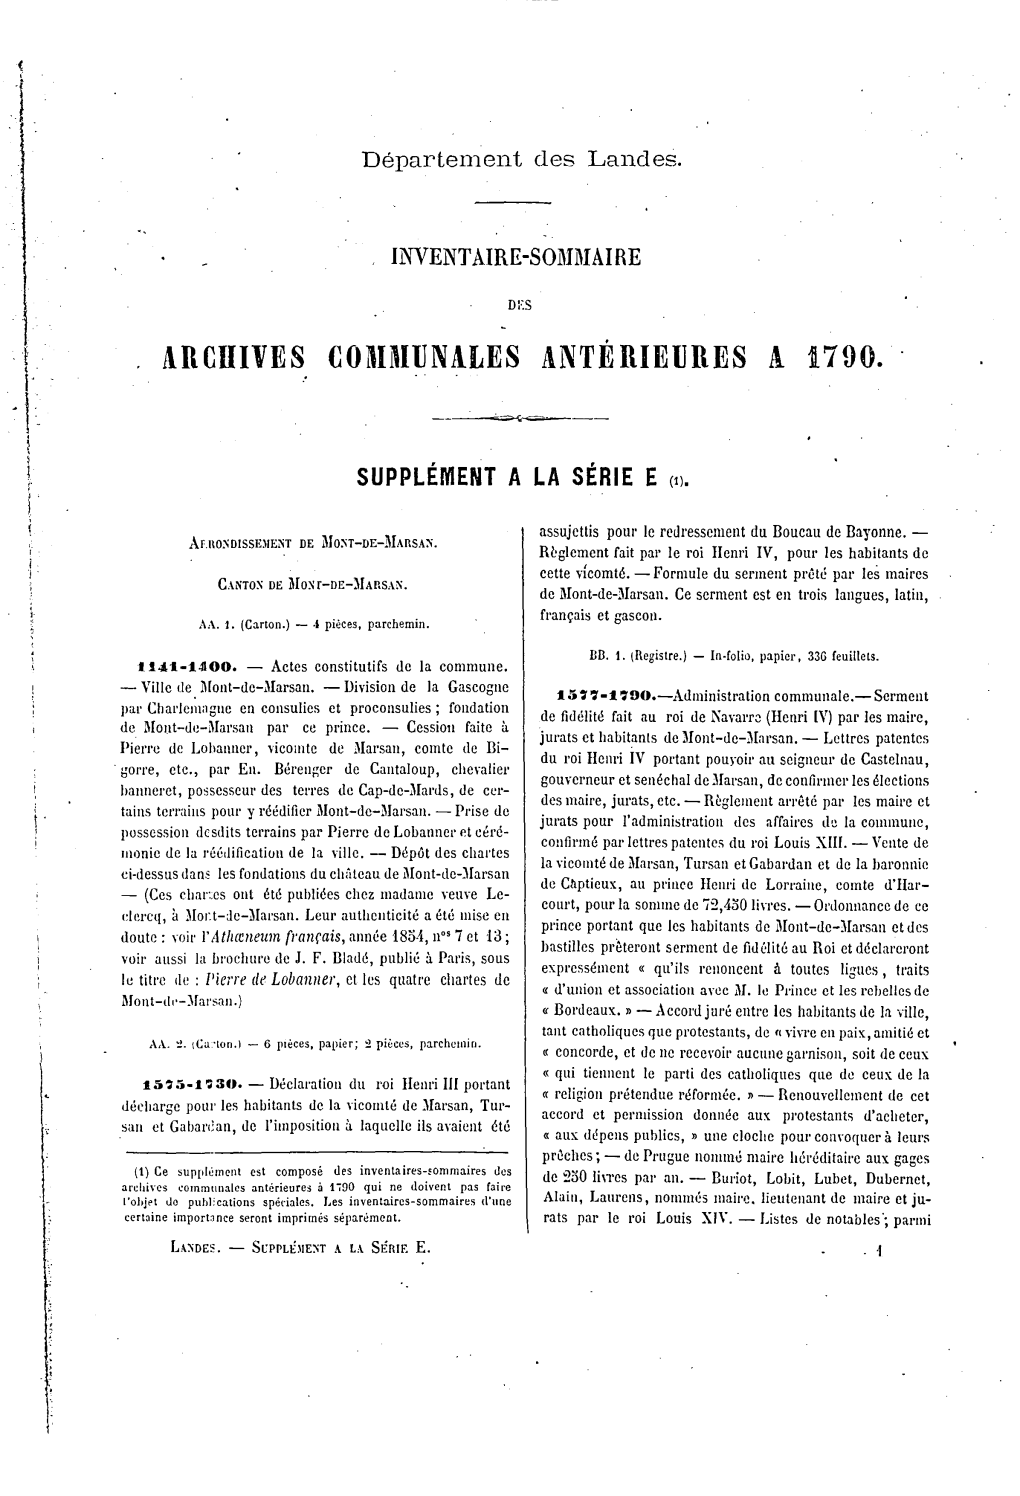 Répertoire Des Archives Communales Antérieures À 1940 Déposées